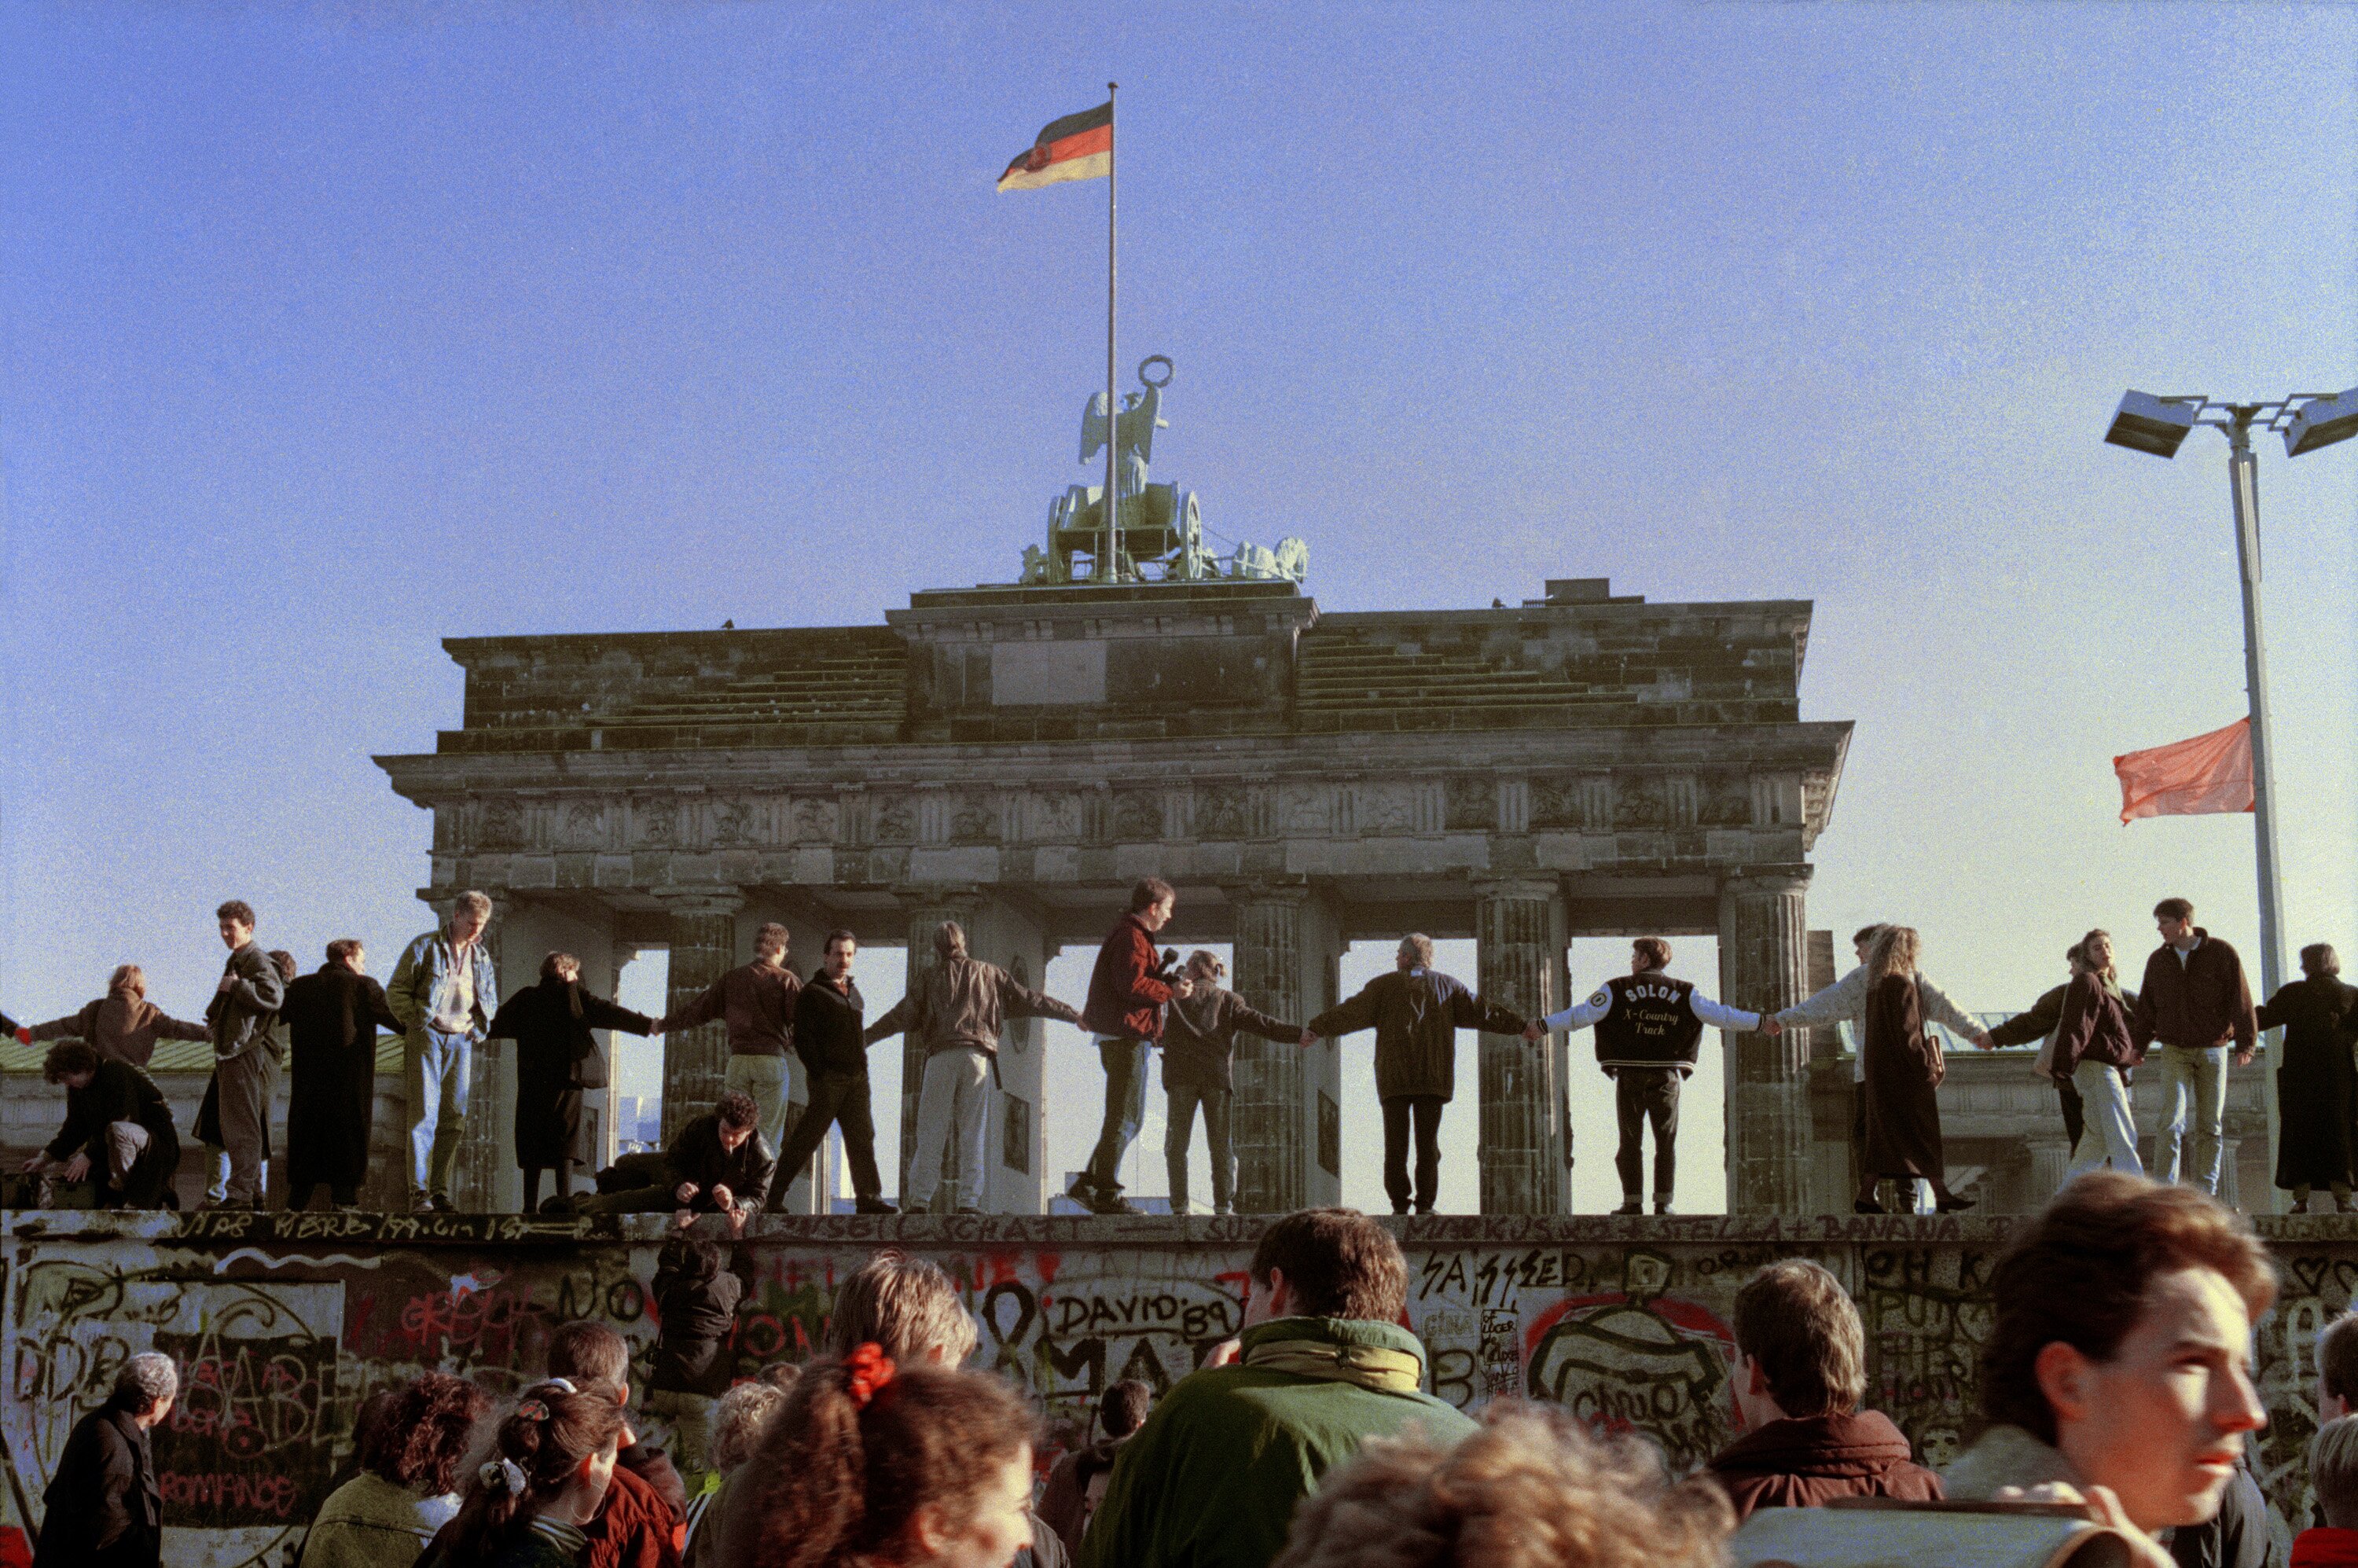 BERLIN WALL